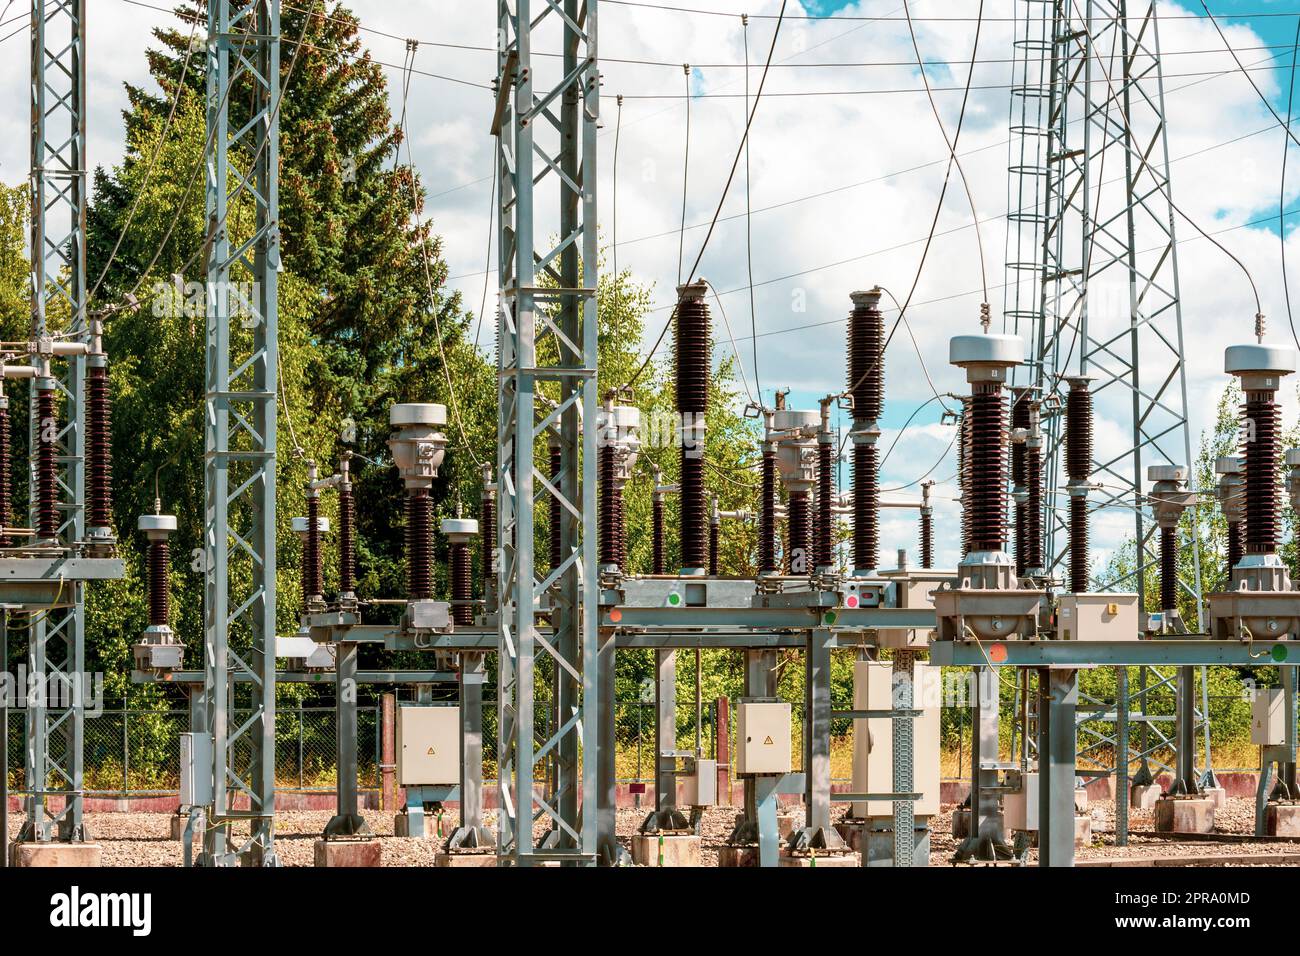 Verteilung der elektrischen Energie in einem großen Umspannwerk mit vielen Stromleitungen Stockfoto